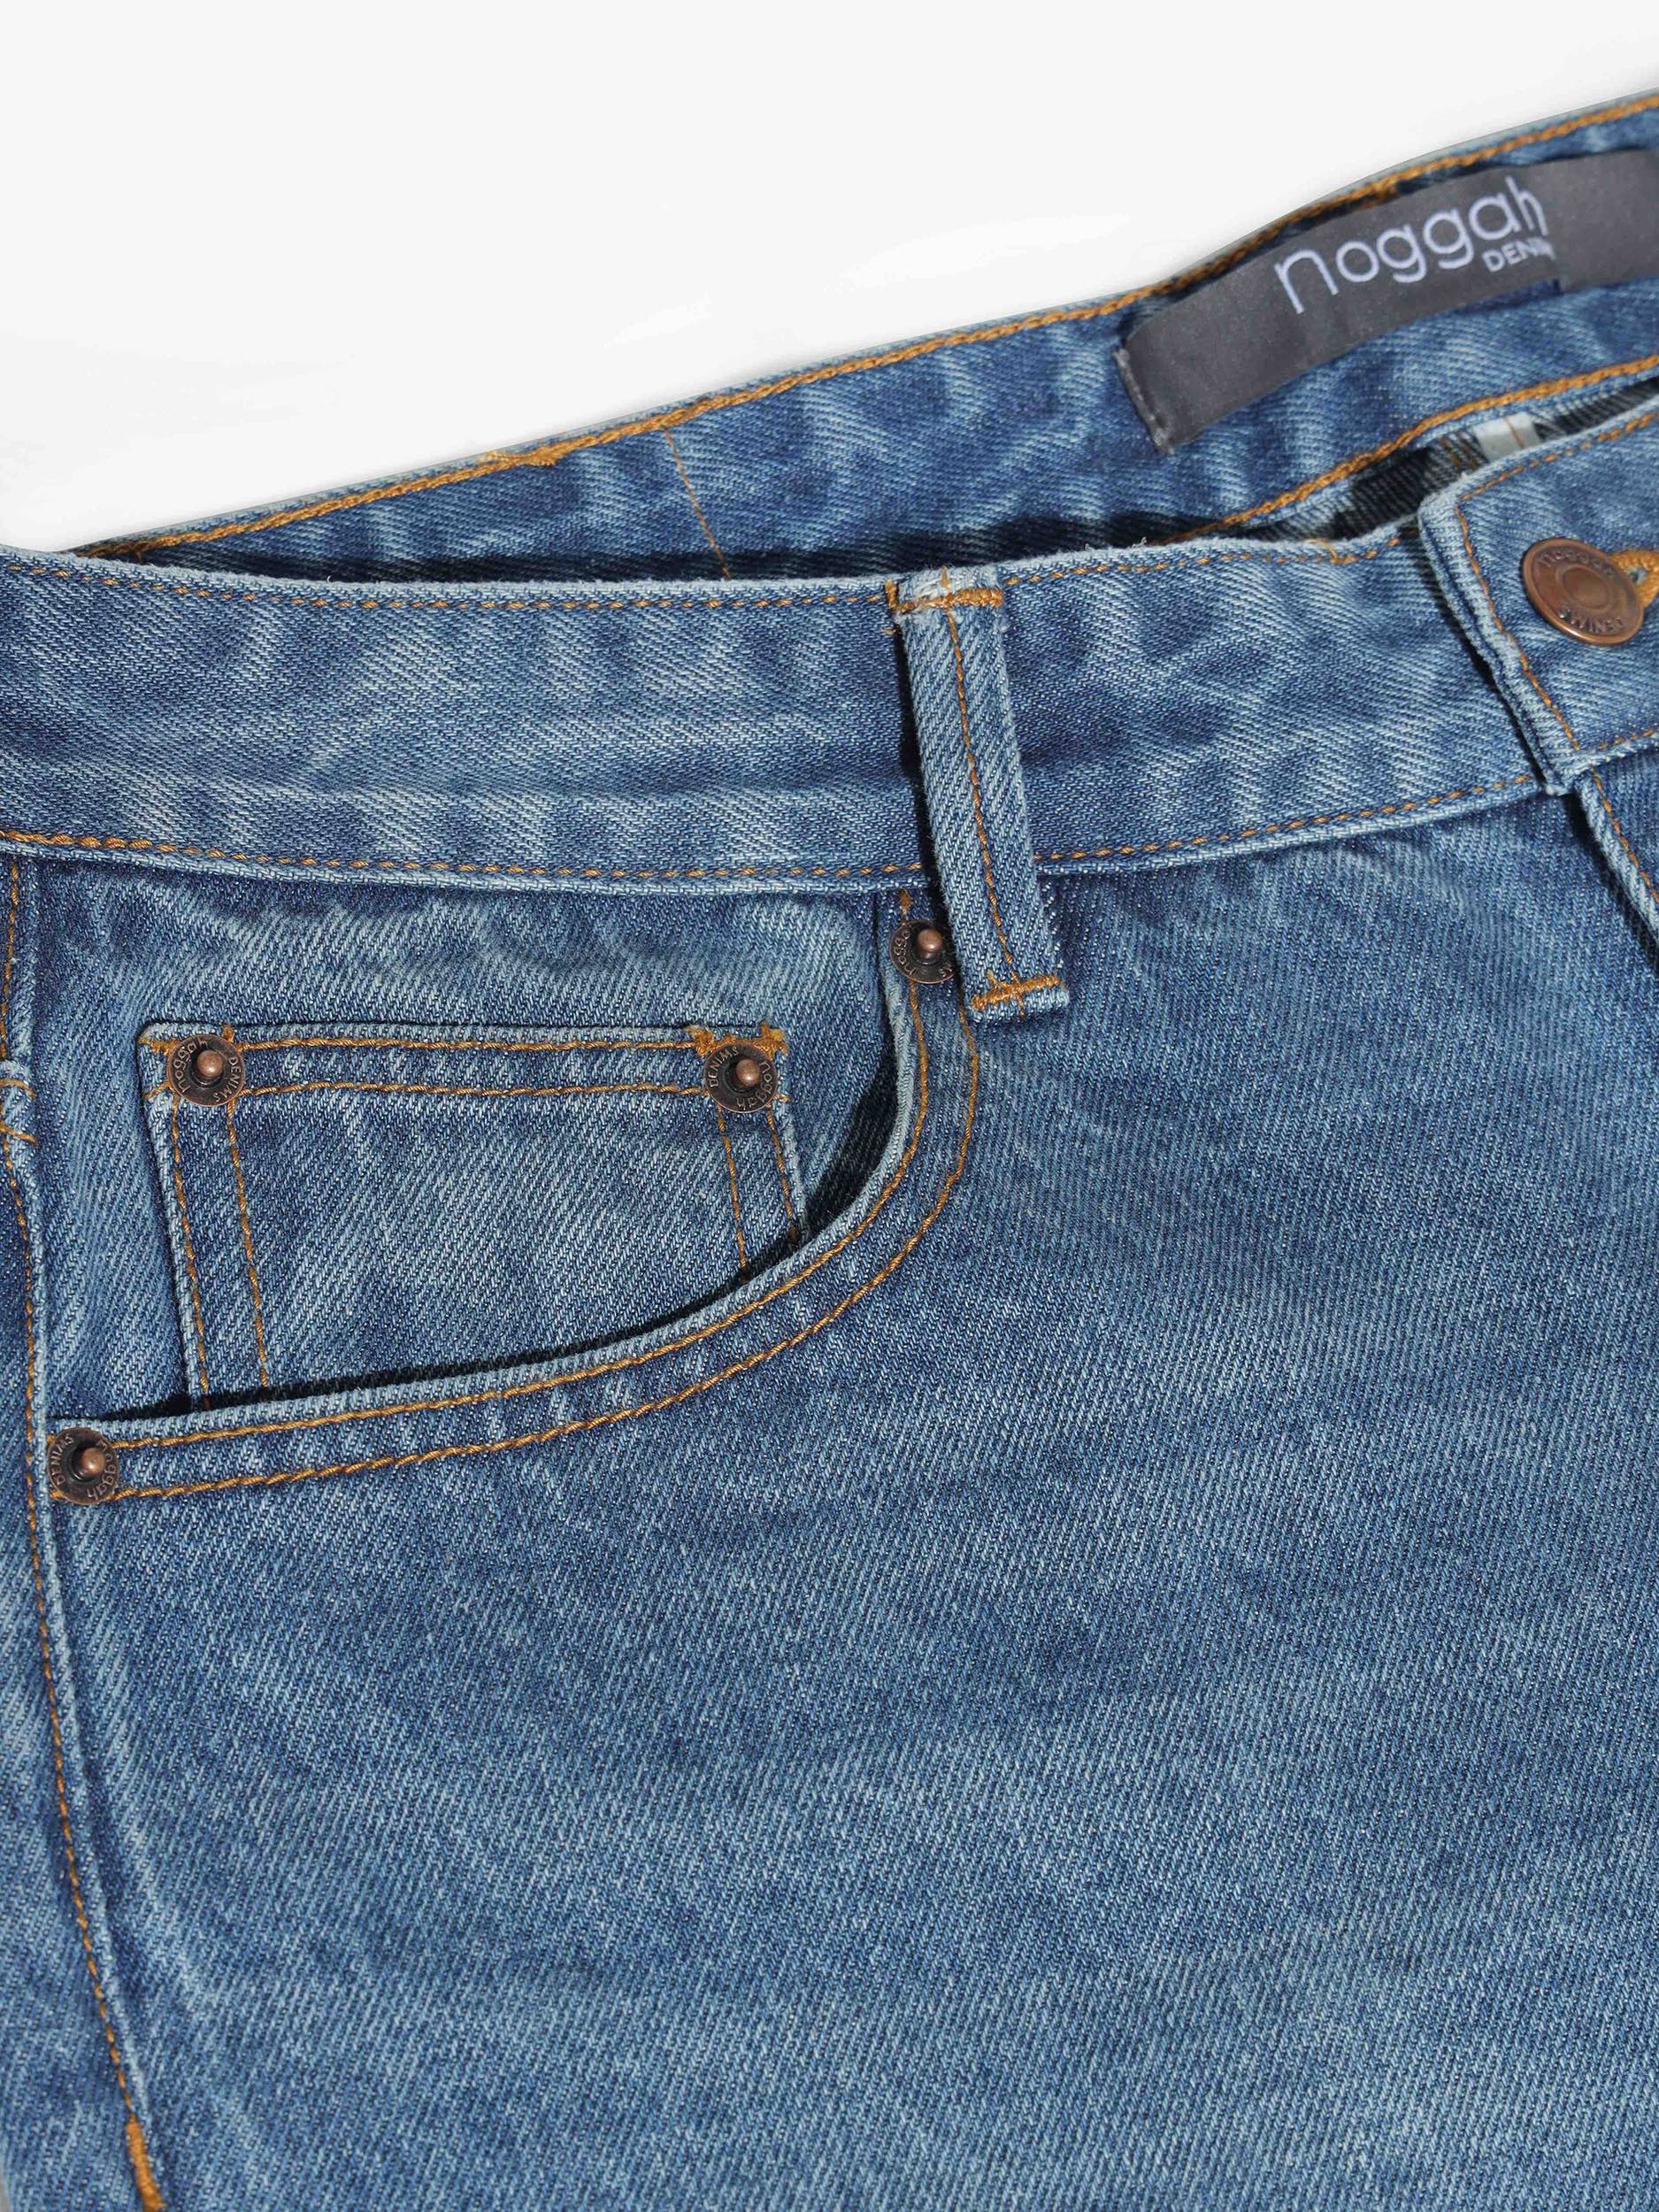 Buy Pants For Men Online at Killer Jeans